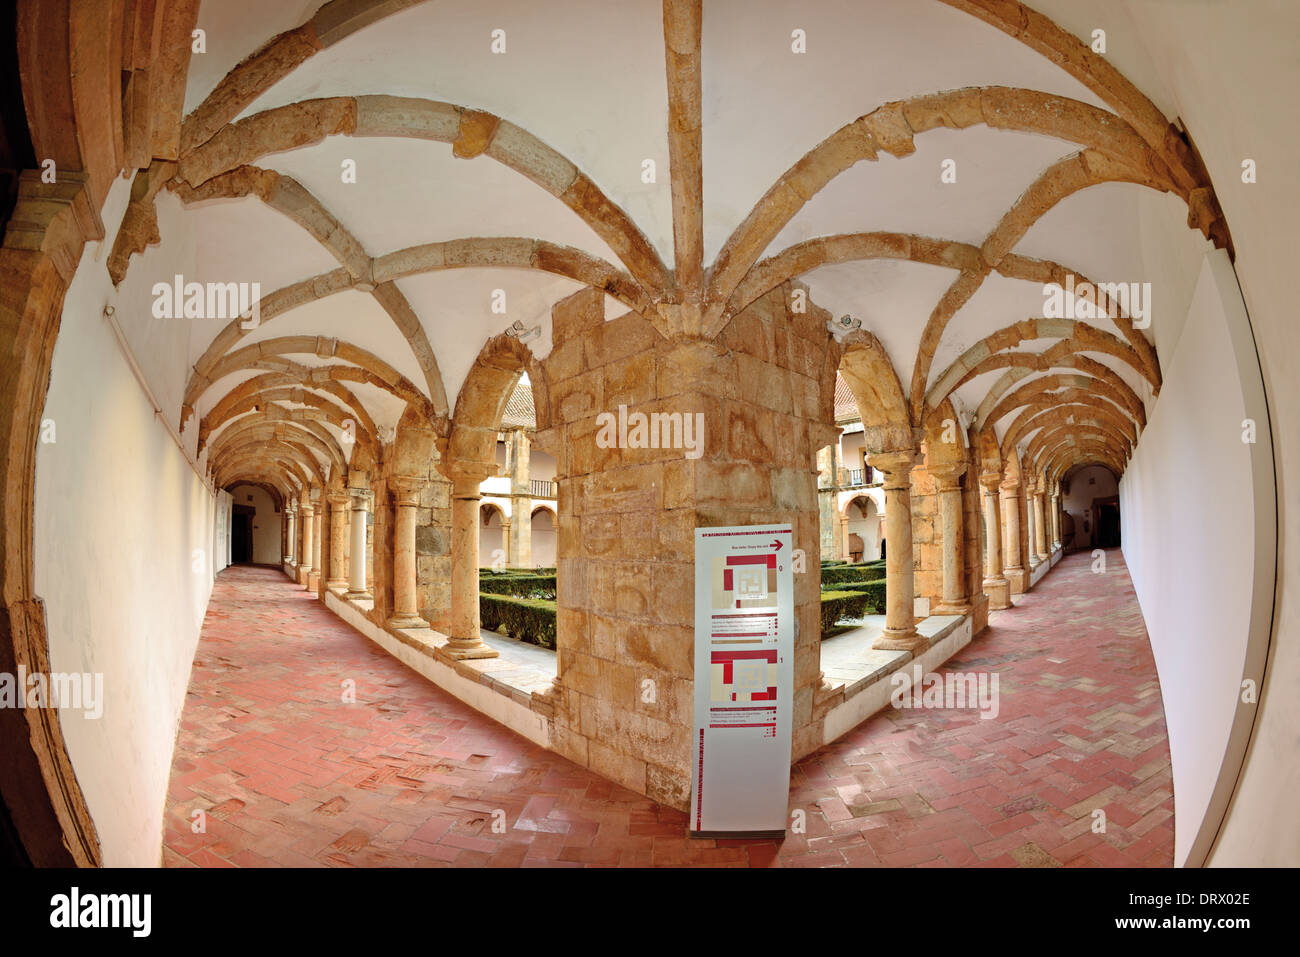 Le Portugal, l'Algarve : Cloître médiéval dans le musée de la ville de Faro Banque D'Images